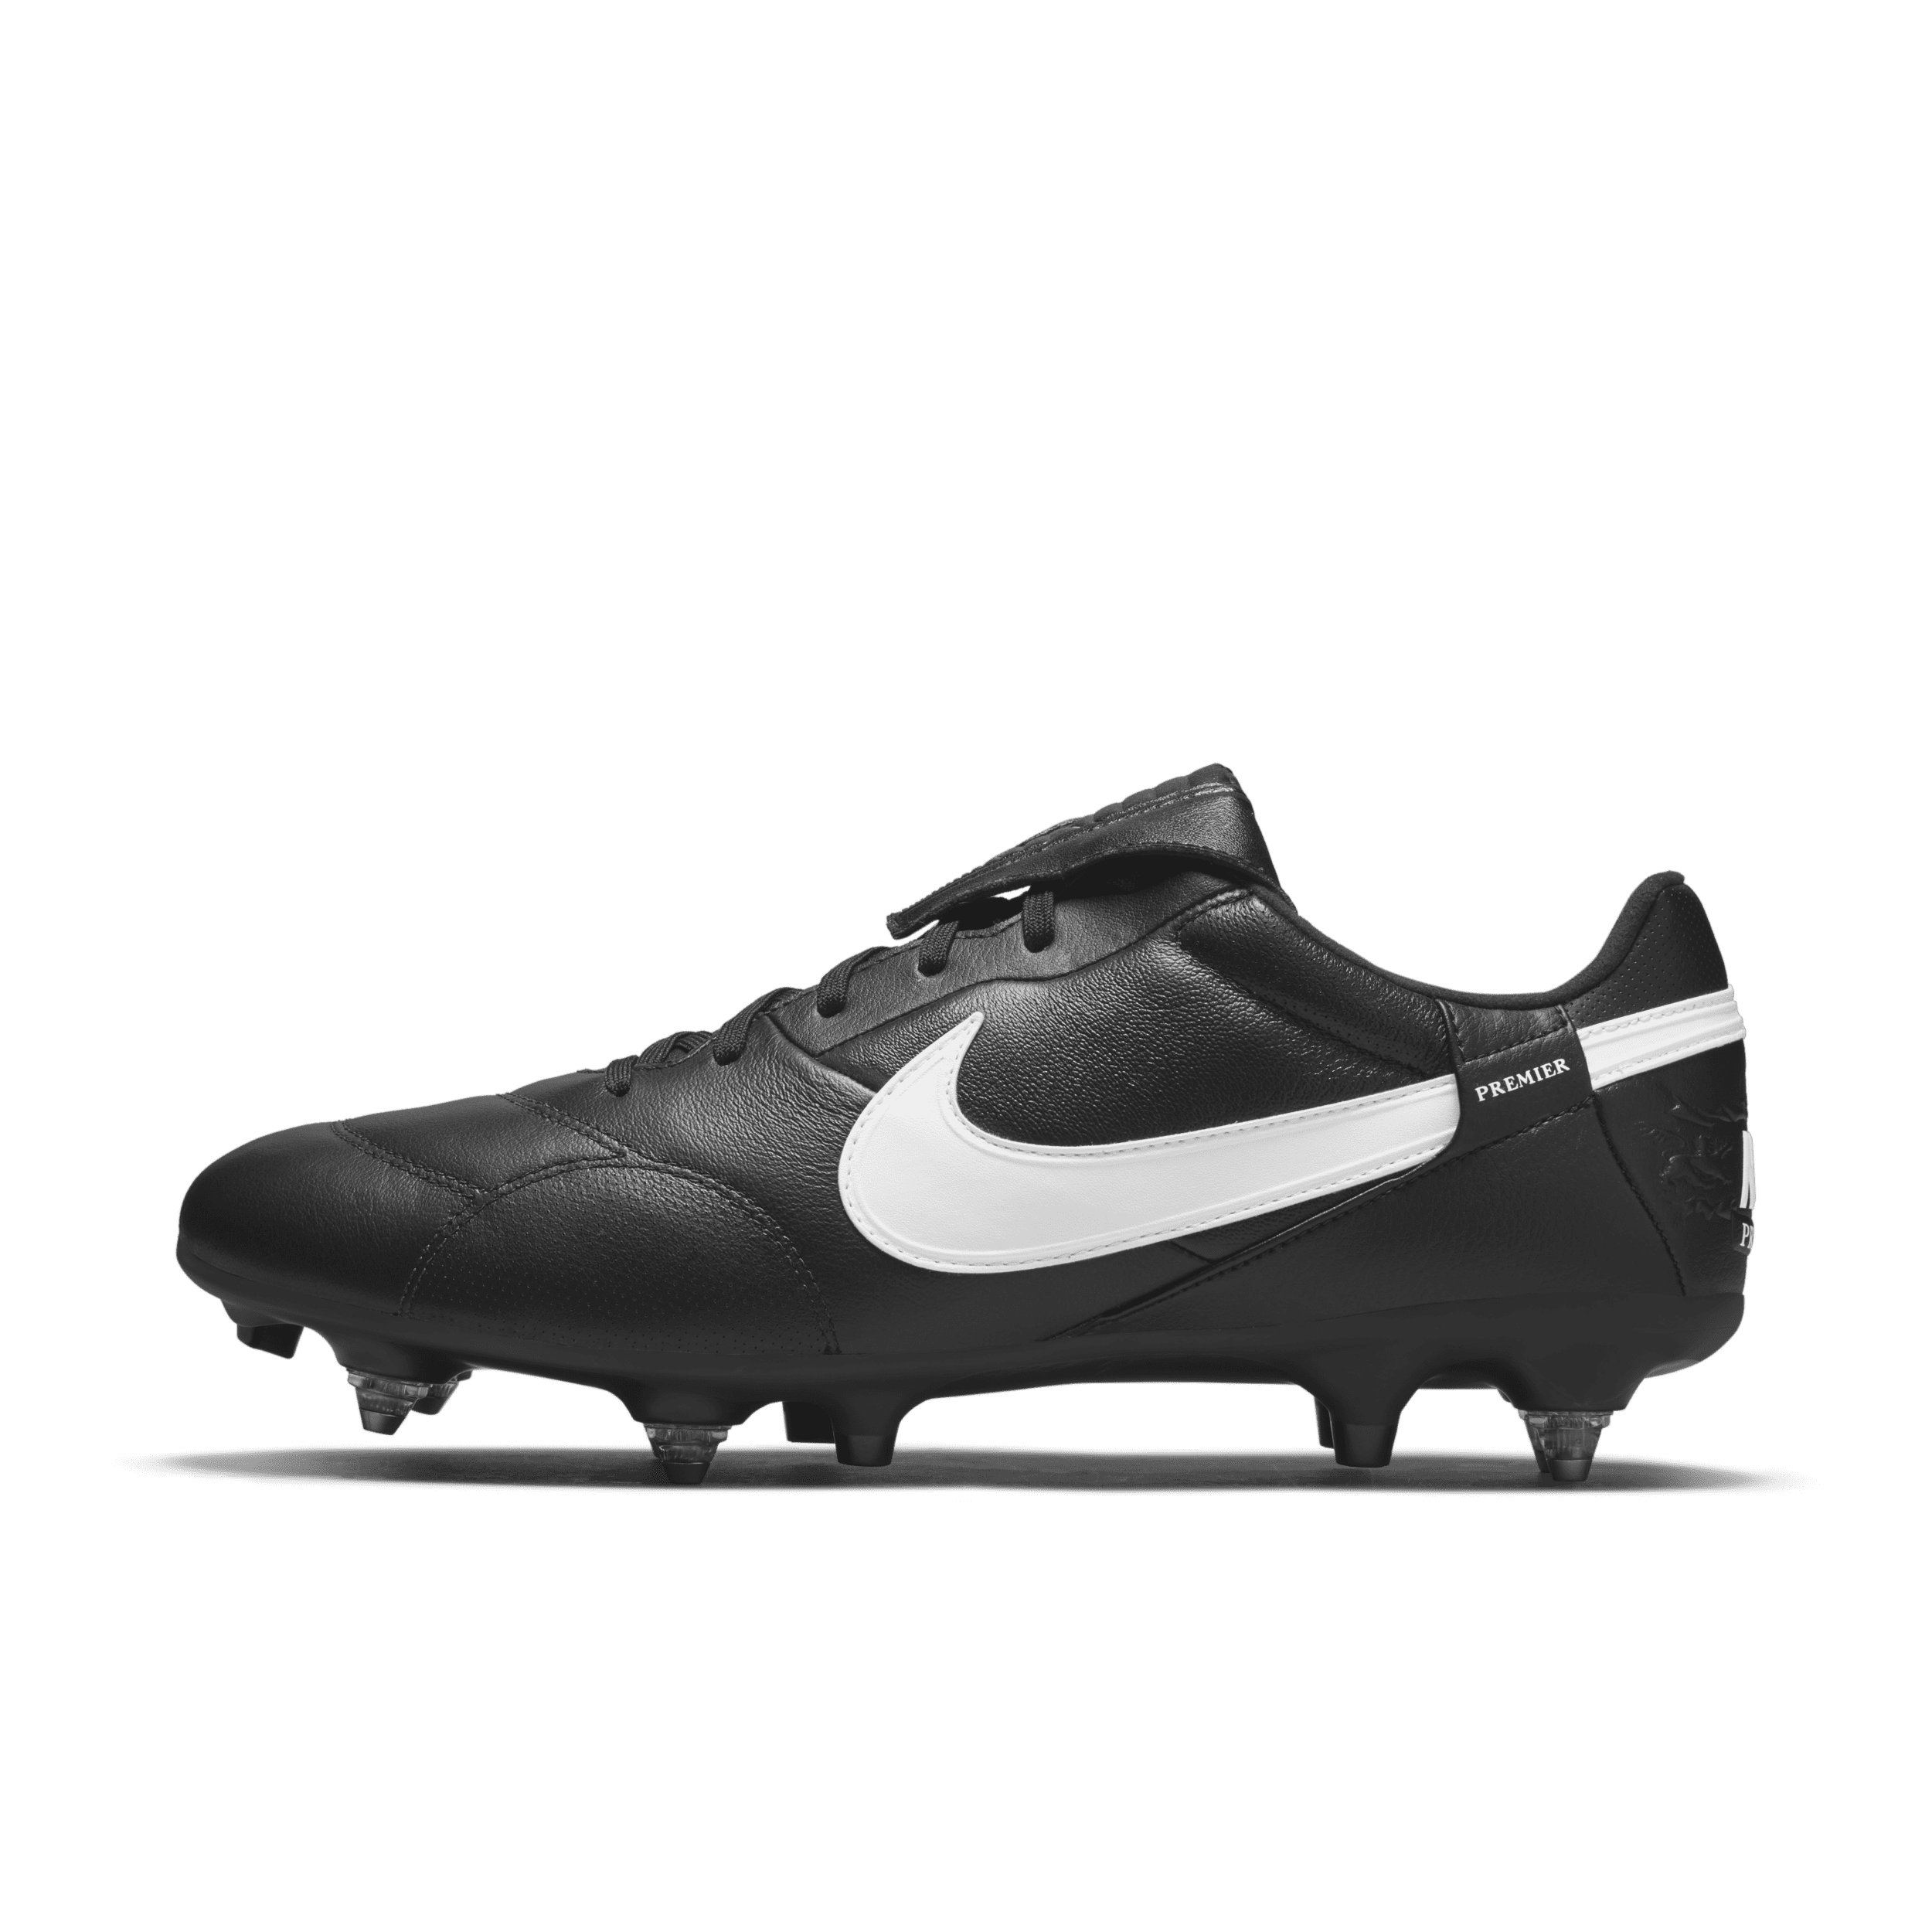 The Nike Premier 3 SG-PRO Anti-Clog Traction Voetbalschoenen (zachte ondergrond) – Zwart